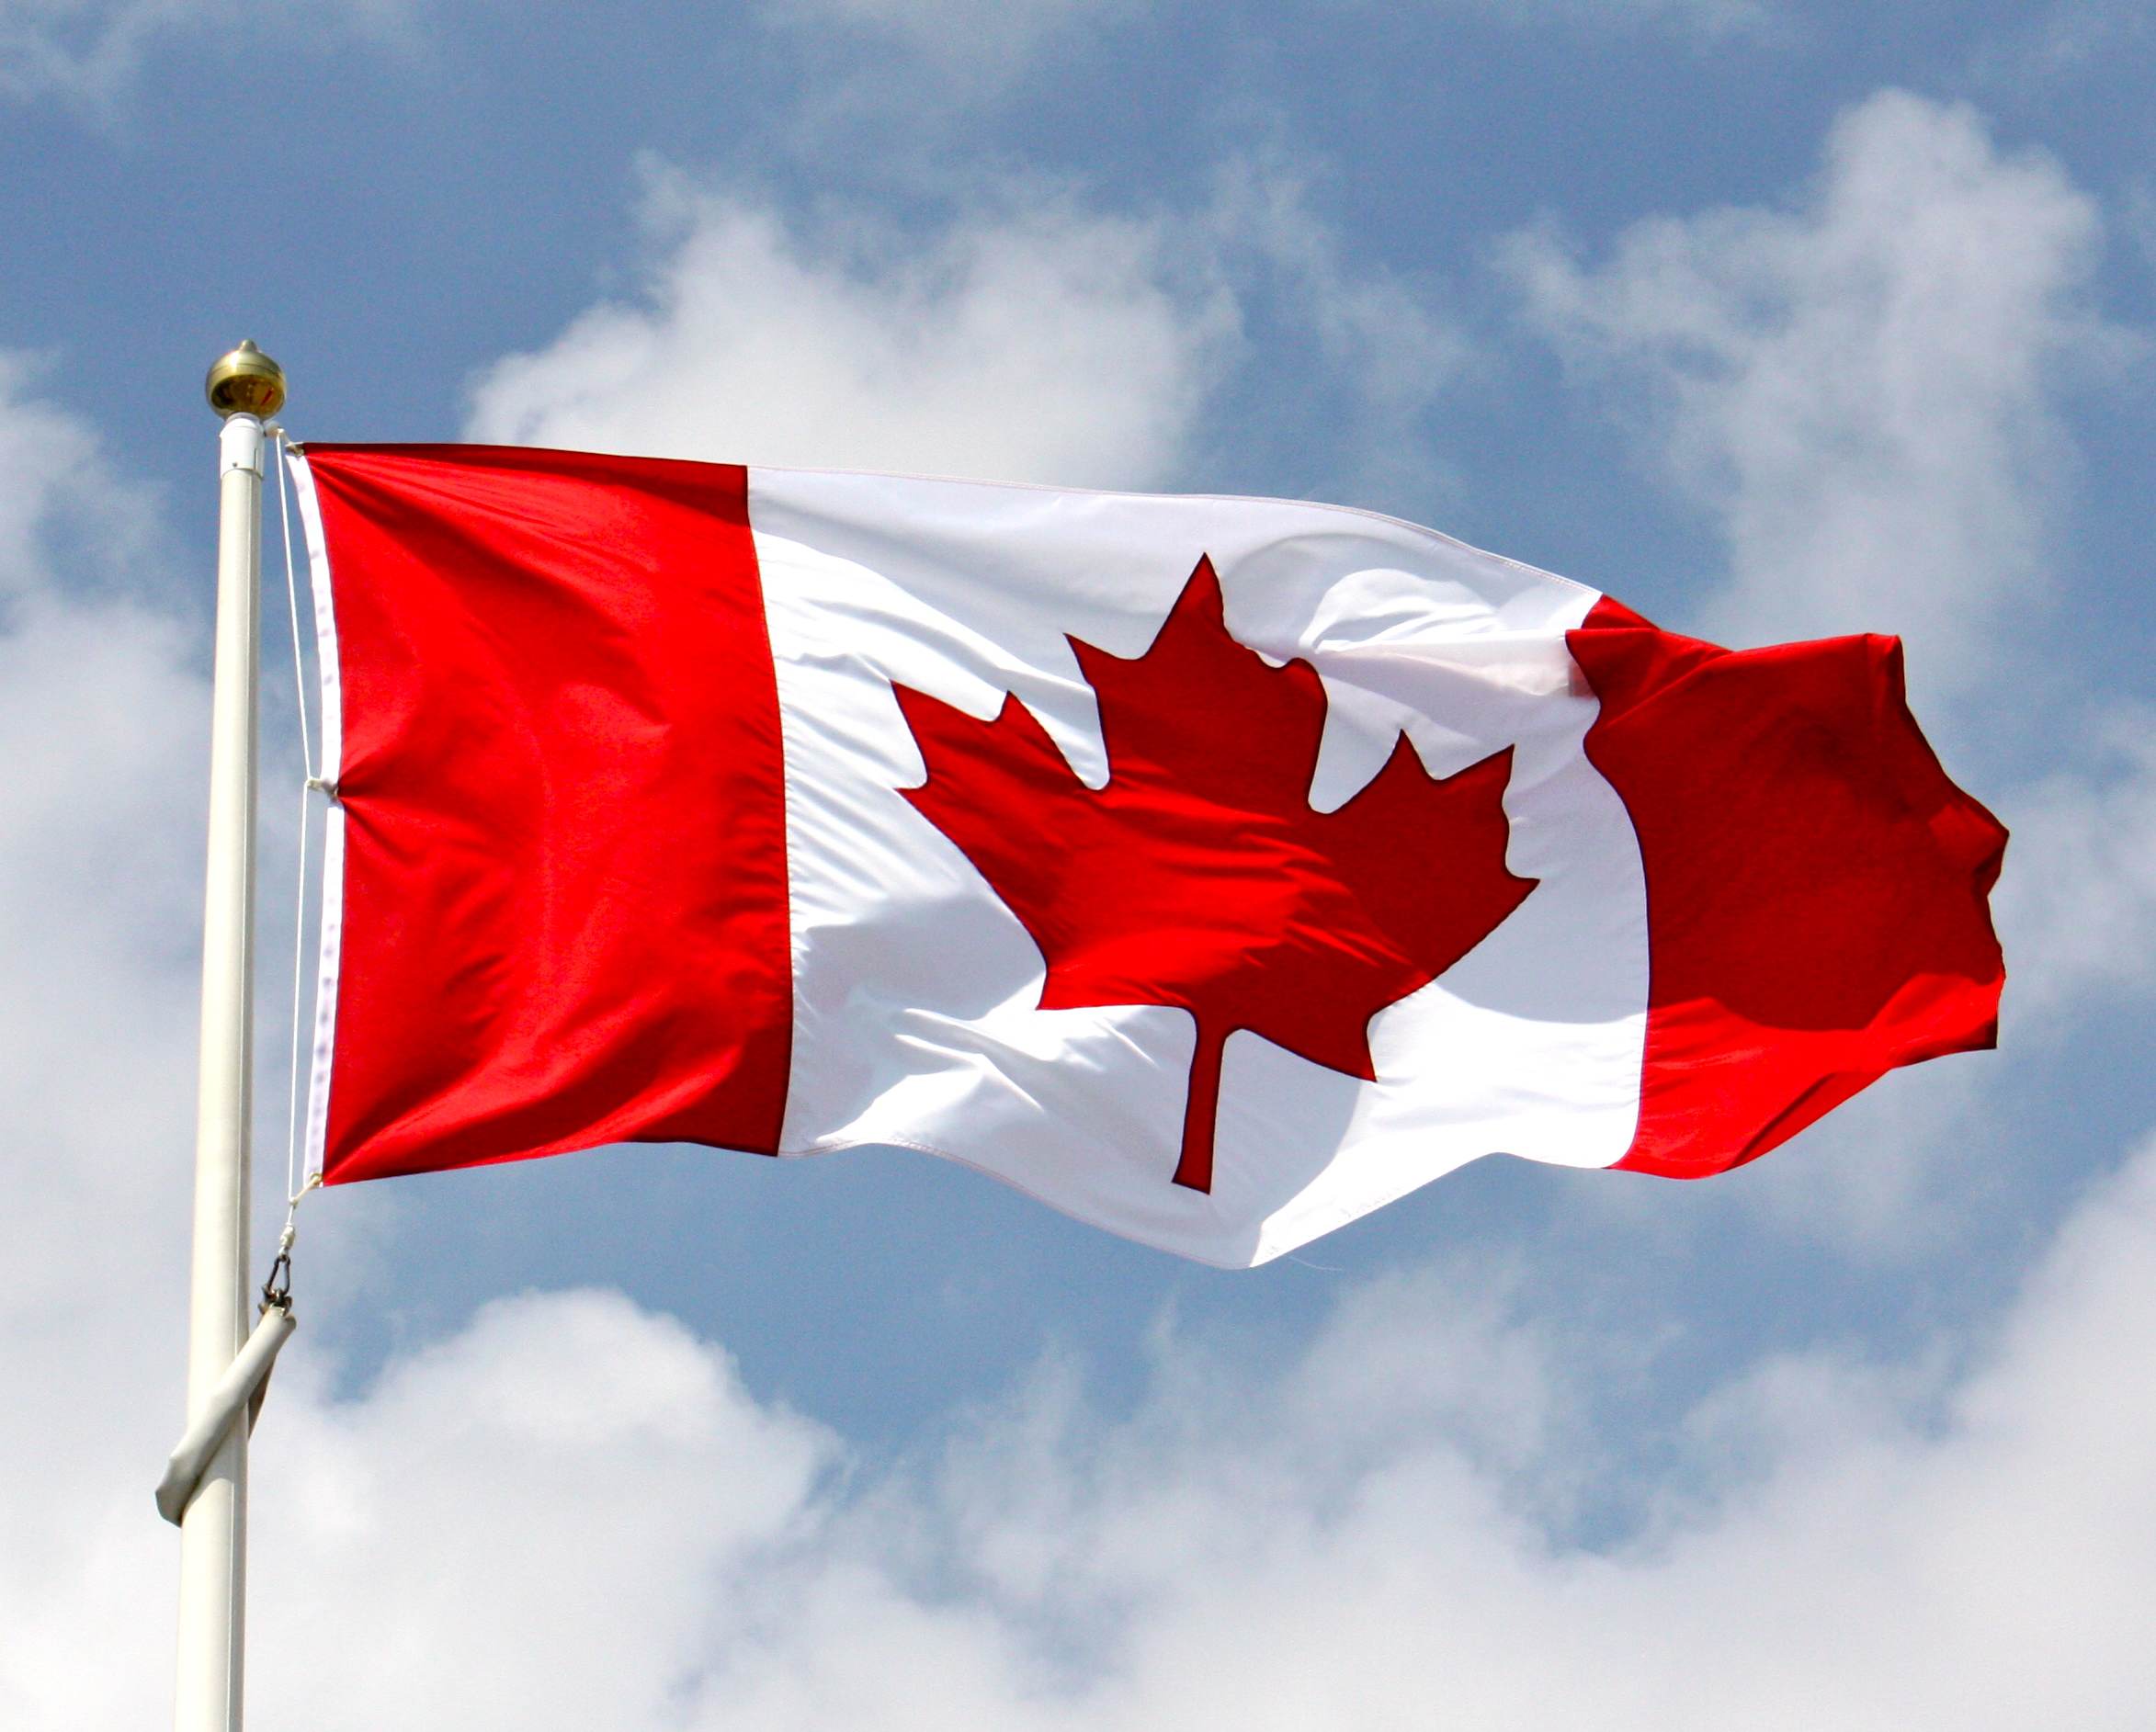 Población de Canadá creció 1.7 millones en 5 años de acuerdo al último censo.